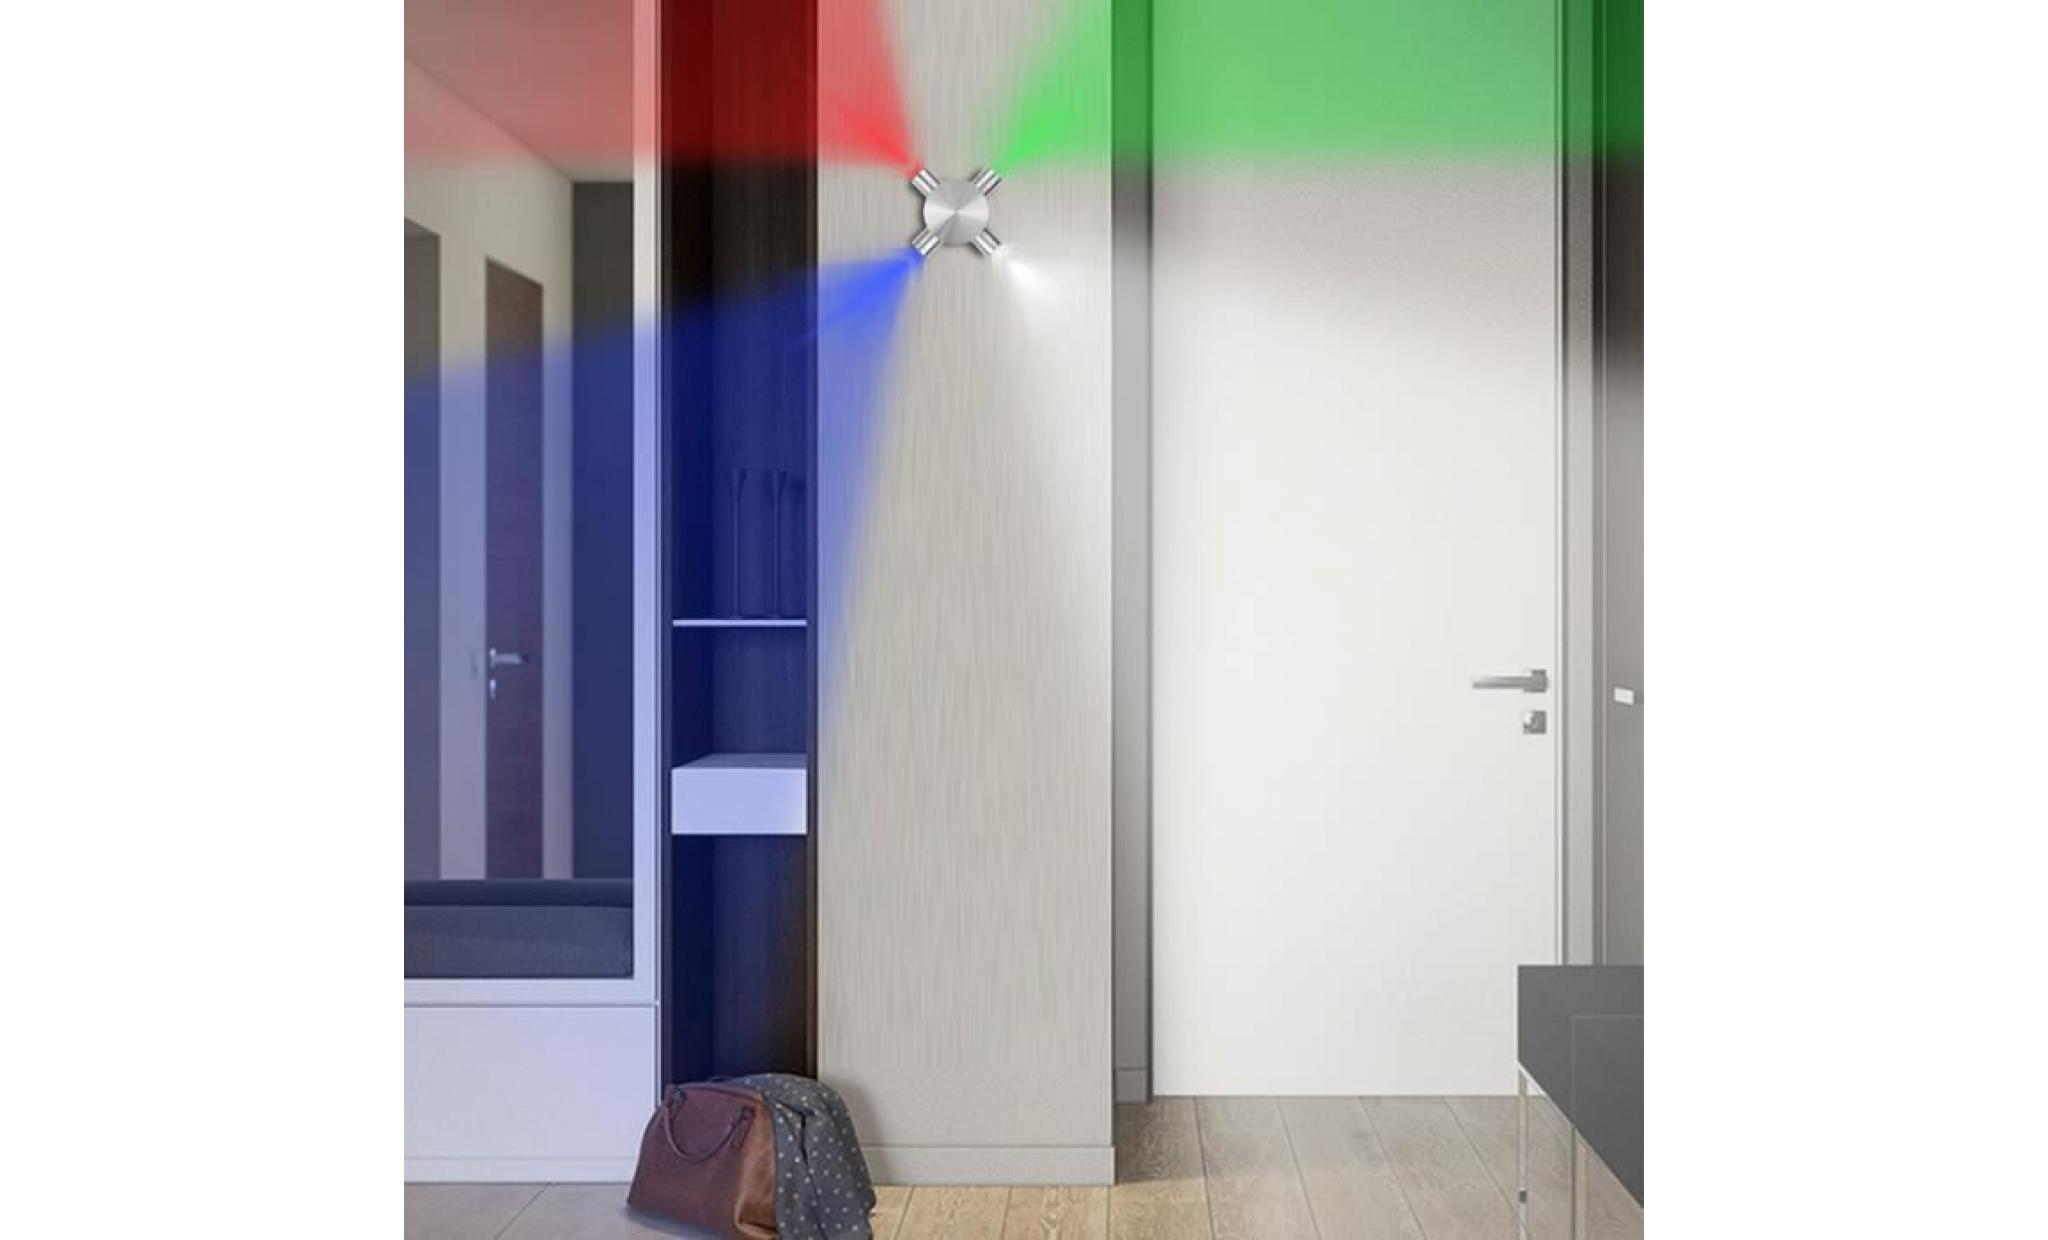 fornorm moderne led mur lampe 4w ac85 265v de mode décoration de la maison intérieure triangle multi couleur appliques murales pas cher